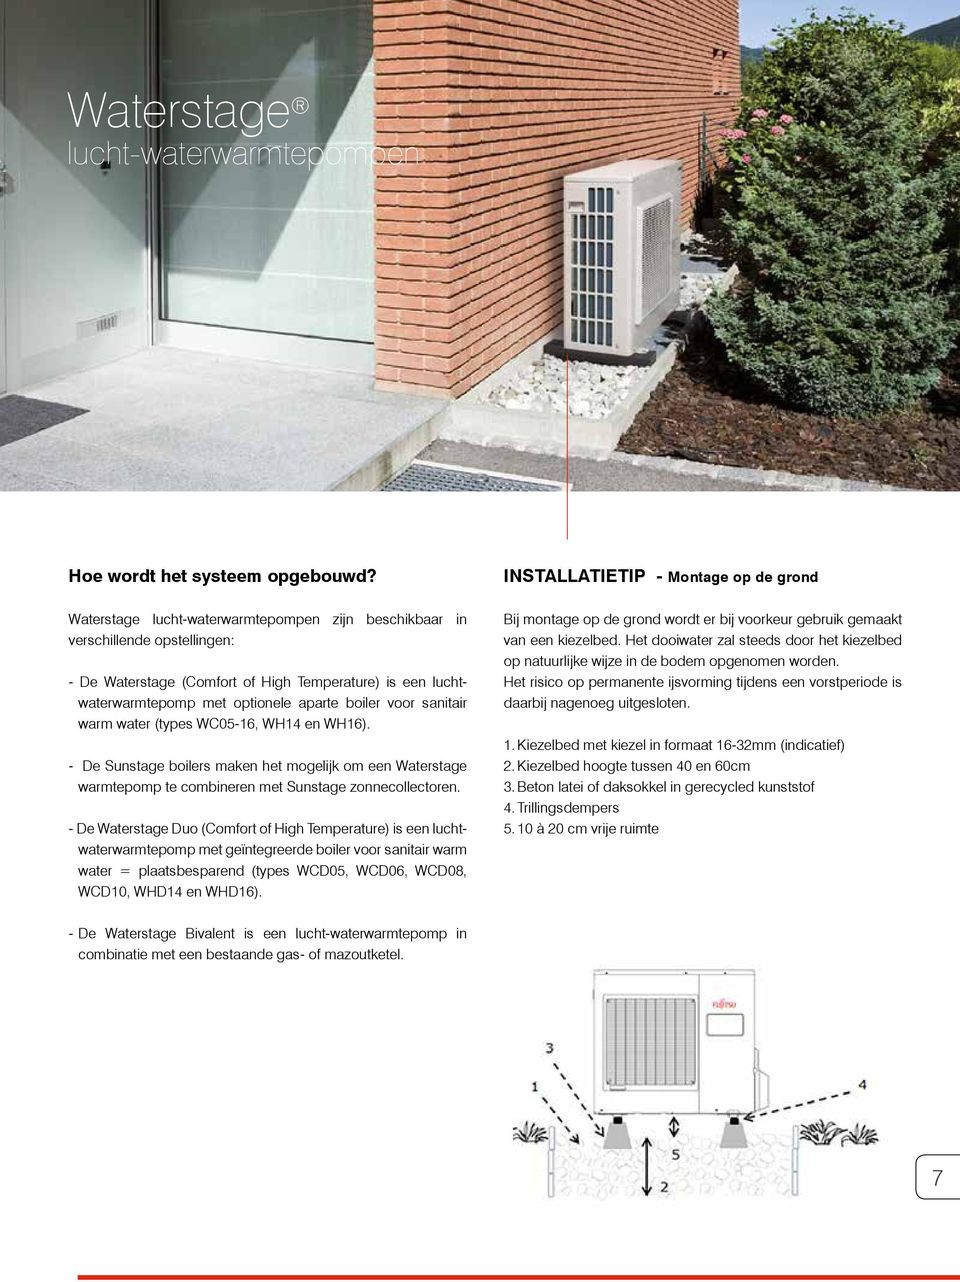 warm water (types WC05, WH14 en WH). De Sunstage boilers maken het mogelijk om een Waterstage warmtepomp te combineren met Sunstage zonnecollectoren.